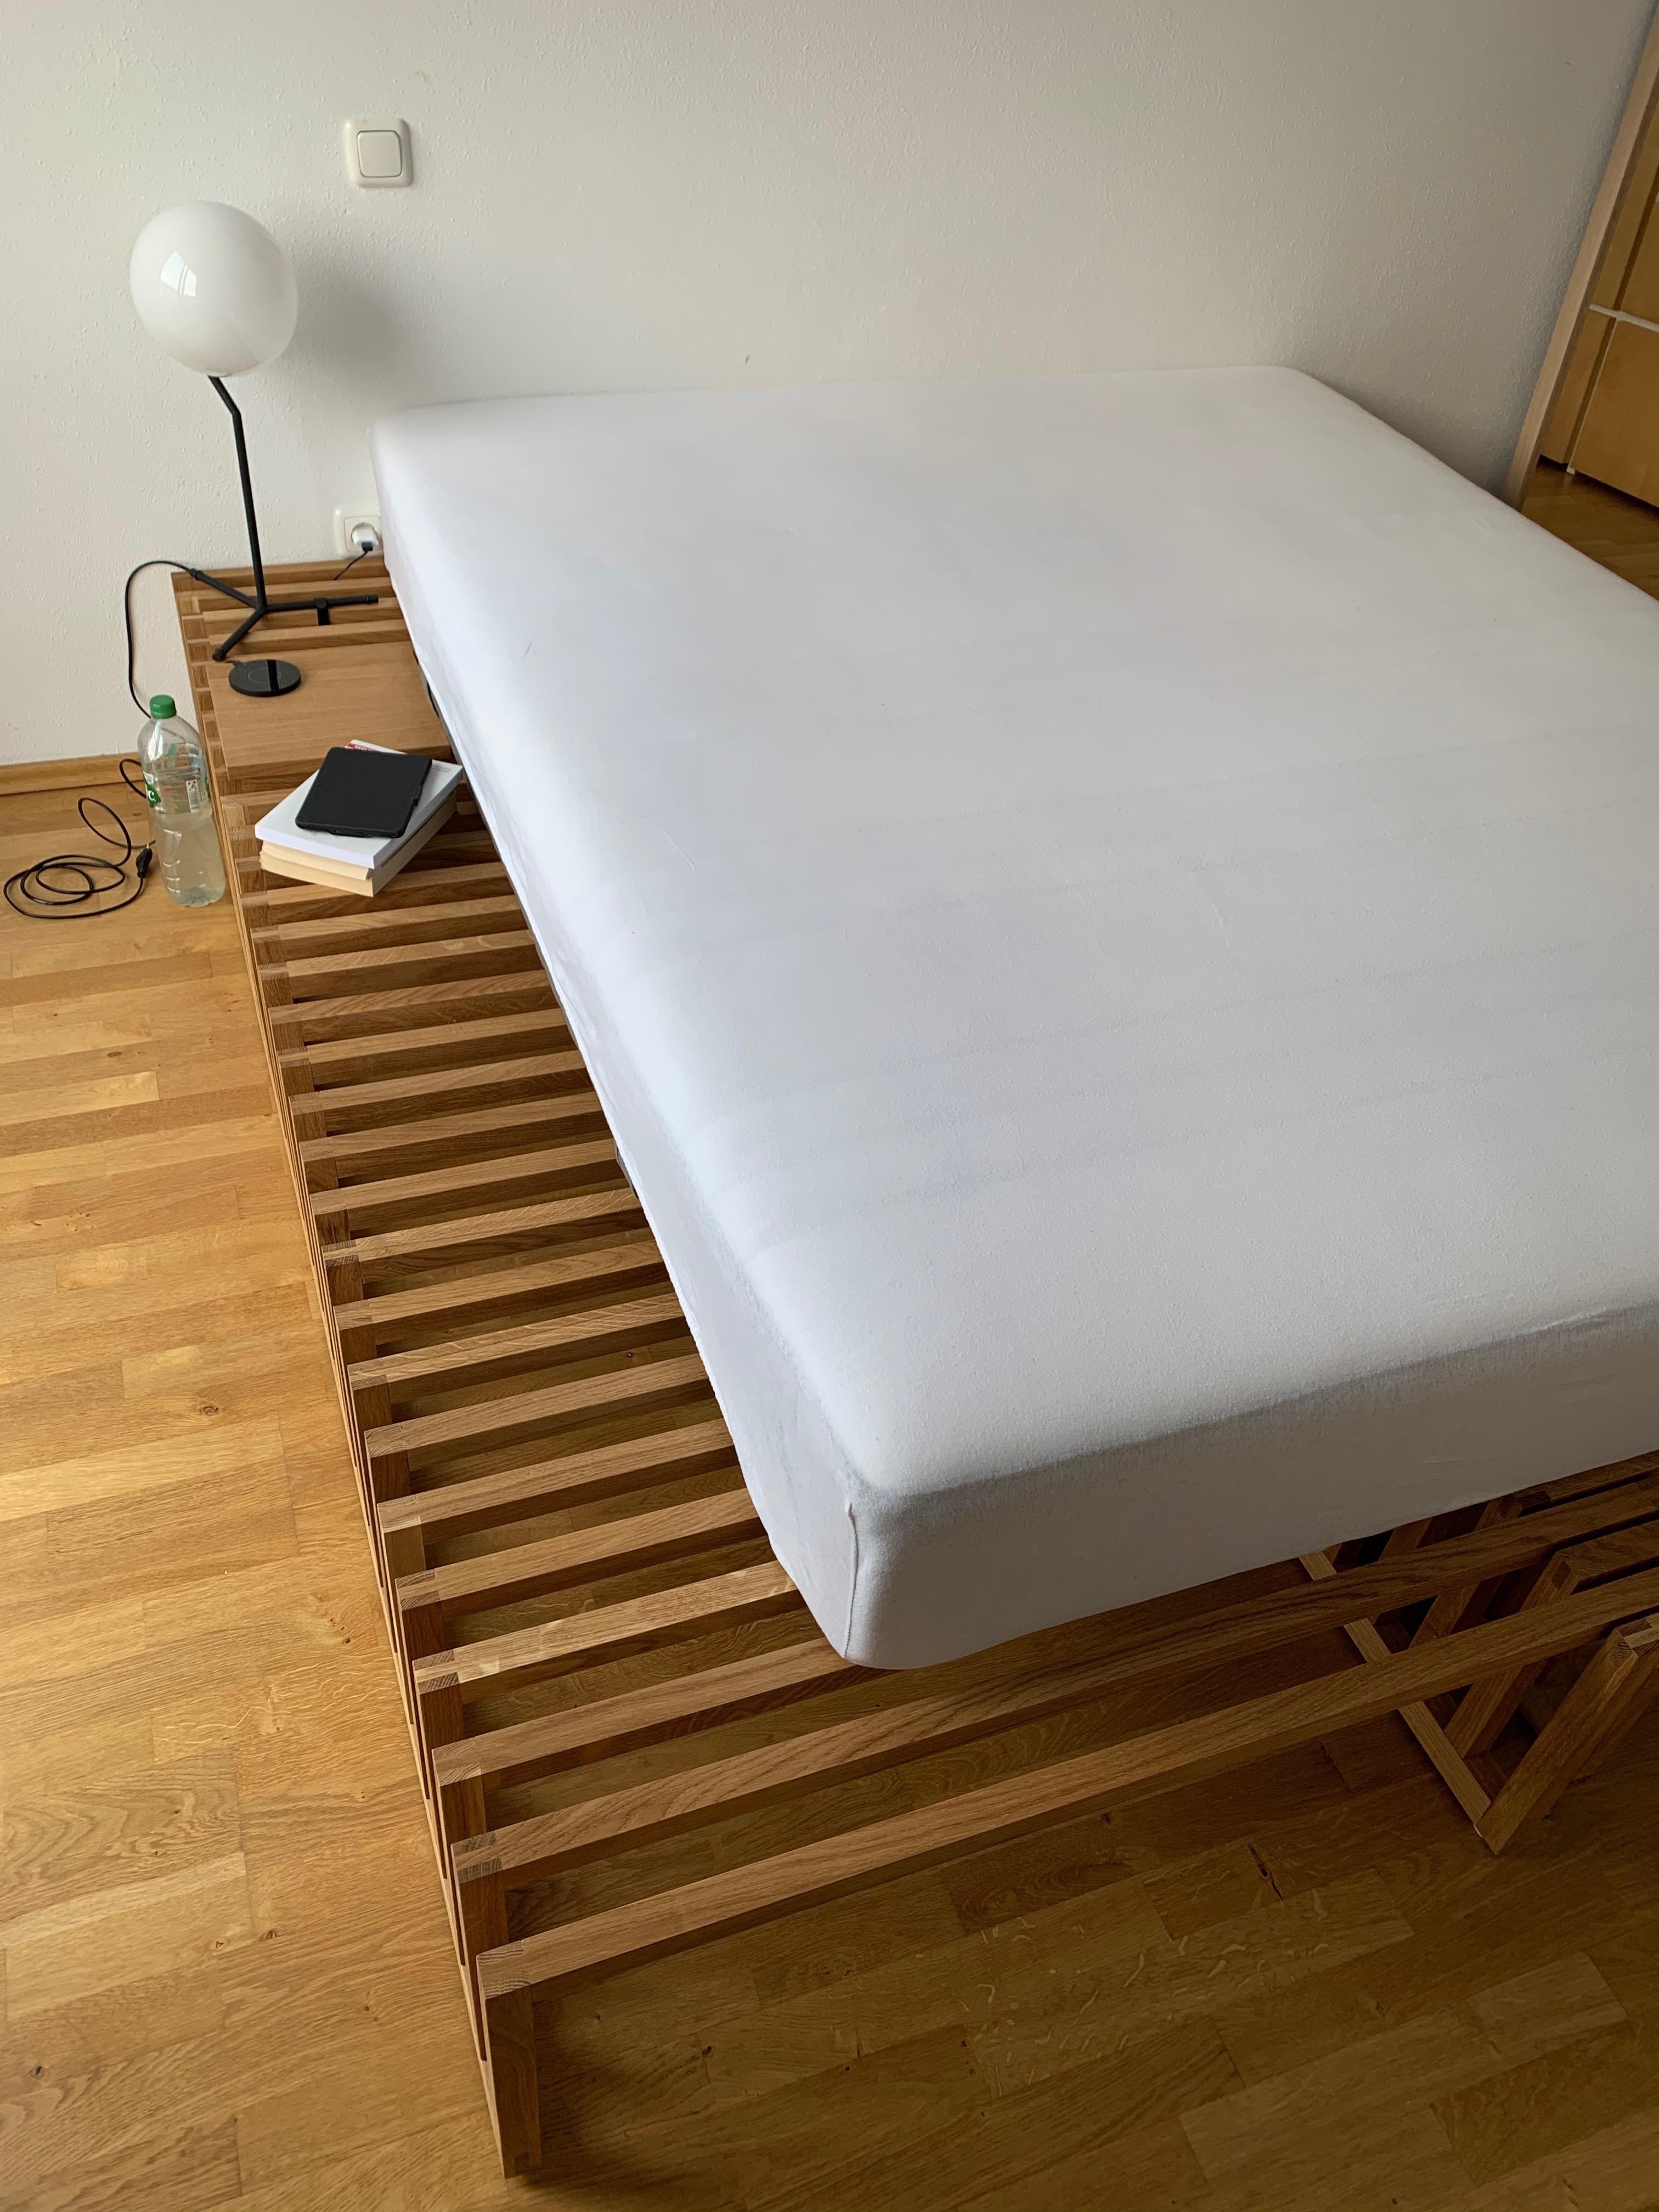 Ausziehbett Yin Yang, stufenlos von 105 cm bis 205 cm ausziehbar. #schlafen #gäste #andreasjanson #wohnen #schlafzimmer